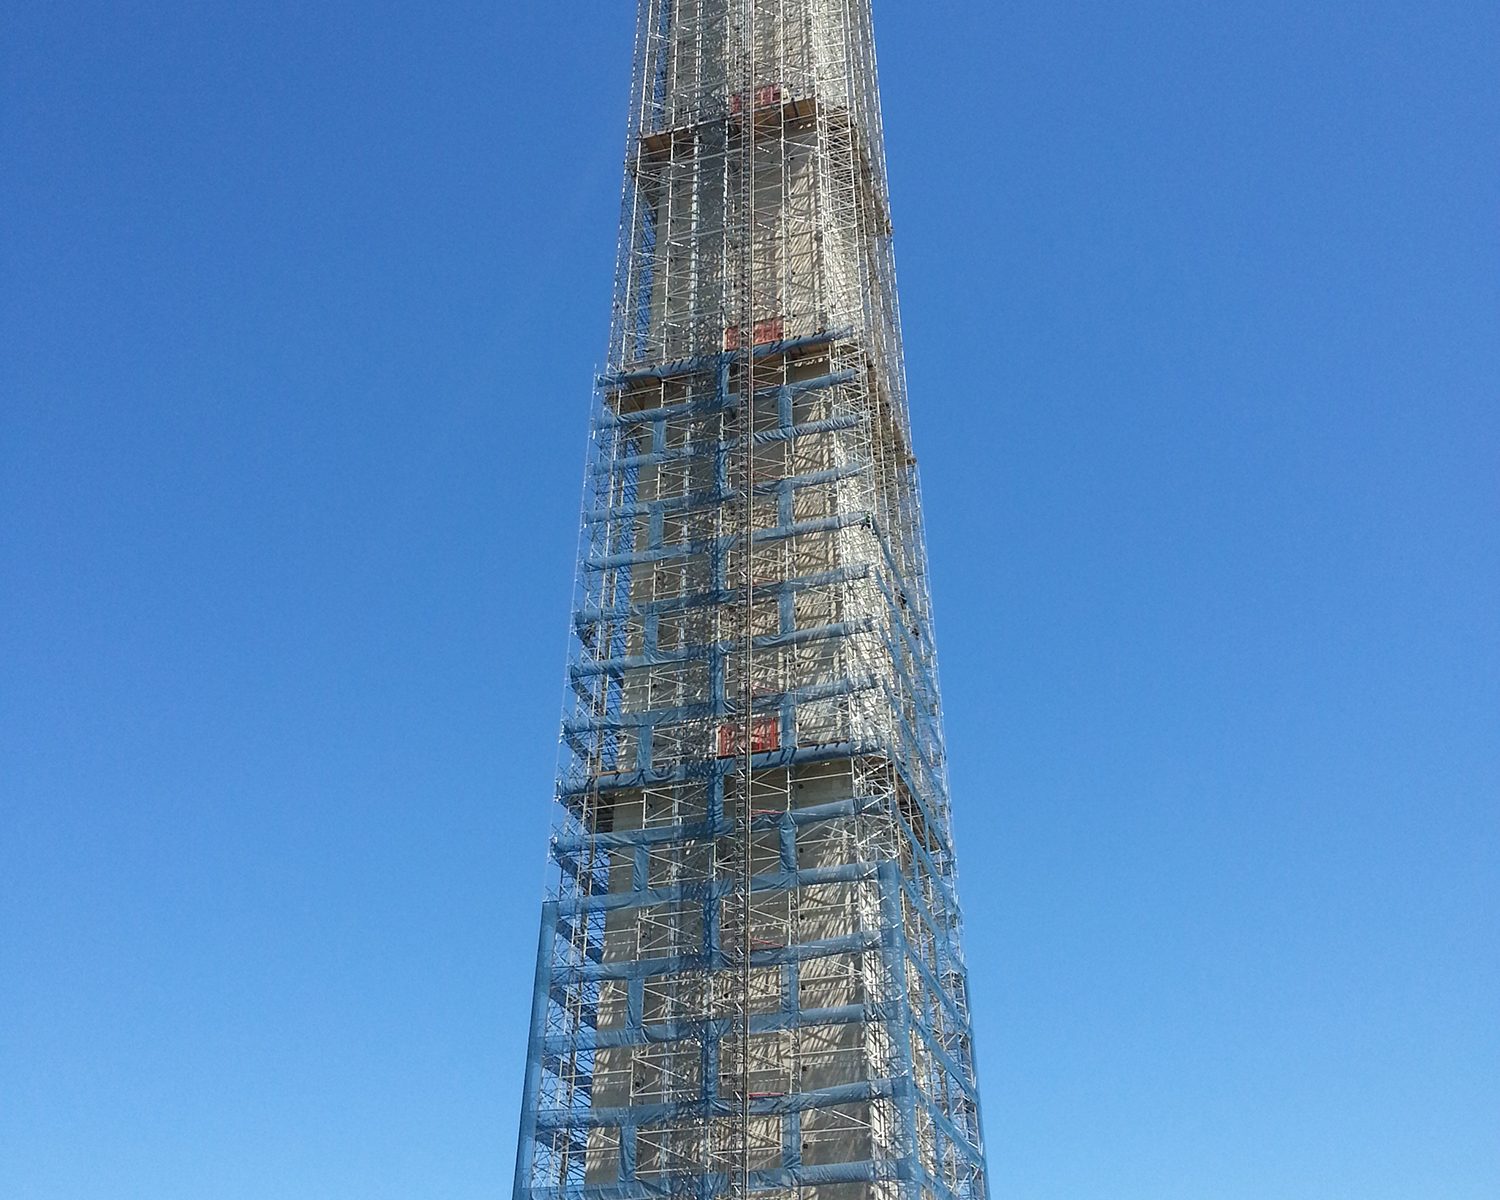 Construction of Washington Monument